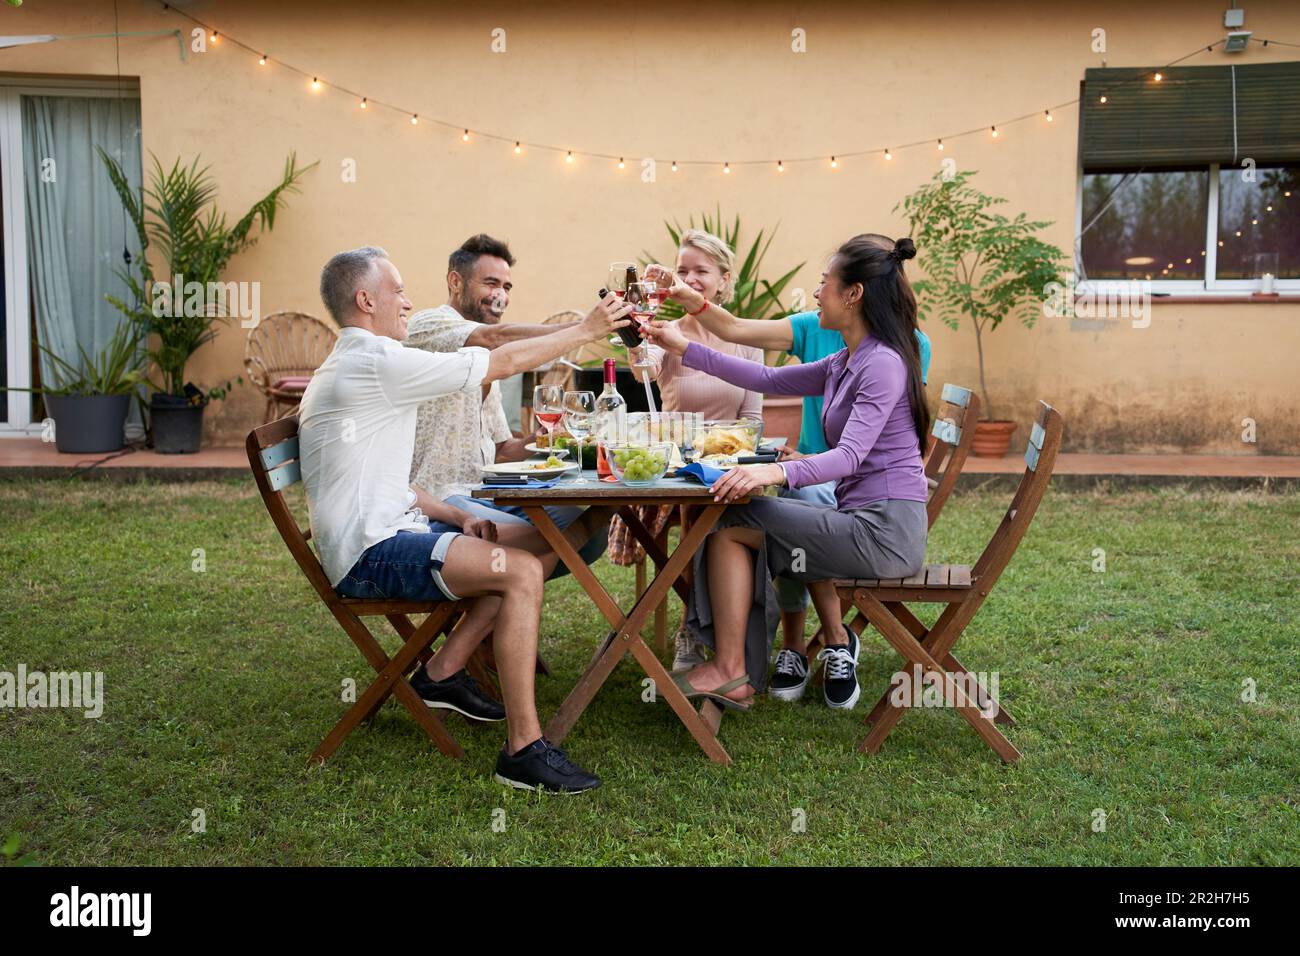 Un gruppo di amici di mezza età brinda con il vino raccolto intorno a un tavolo da giardino in una serata estiva per condividere un pasto e avere un buon tempo insieme. Foto Stock